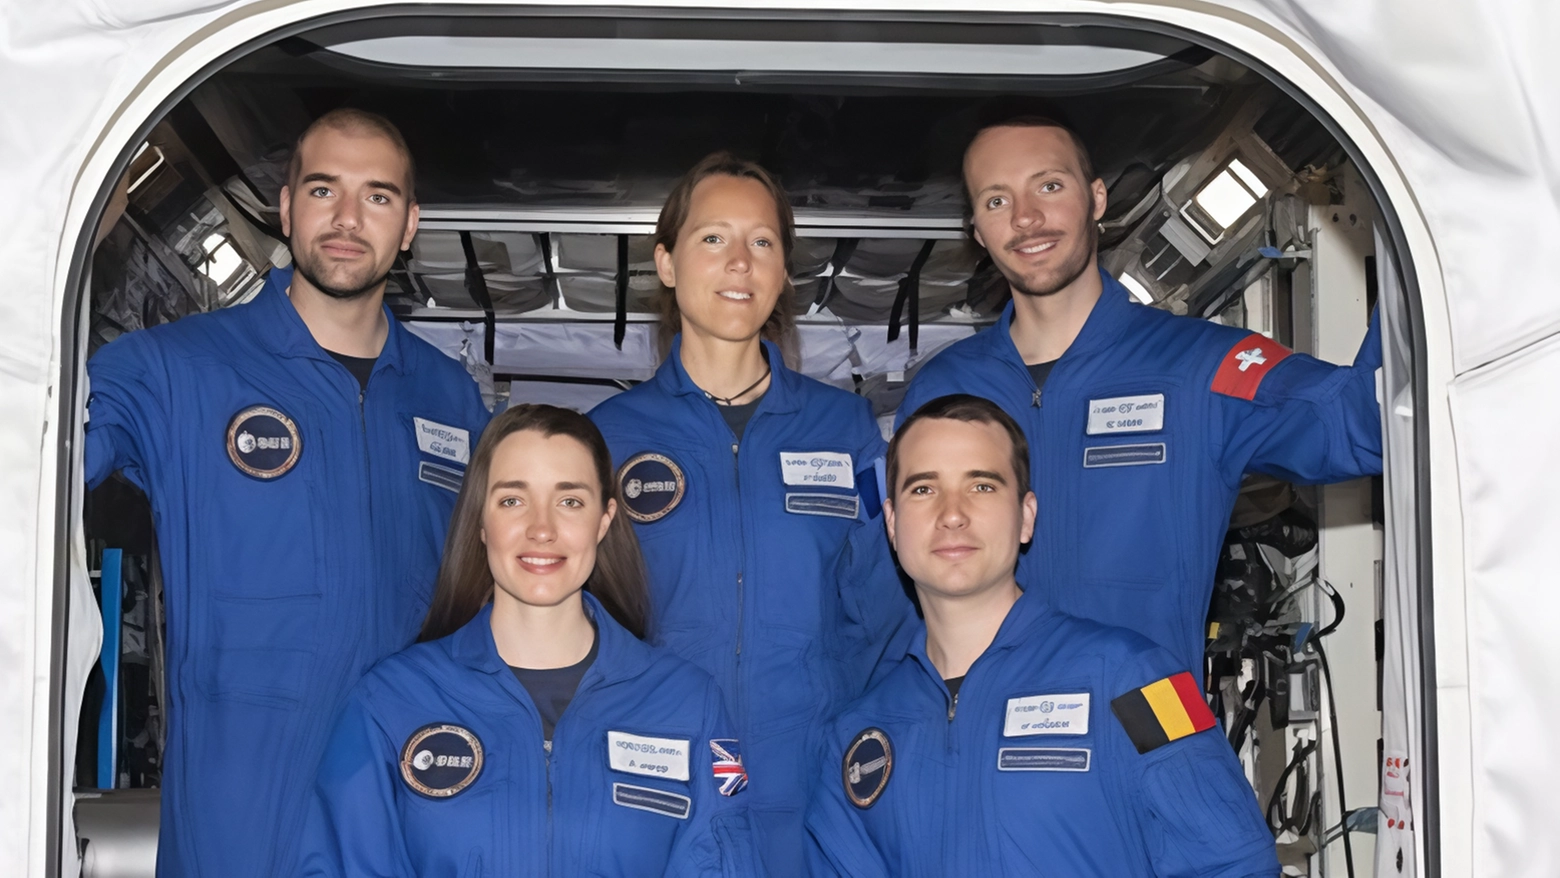 Completo addestramento per i 5 nuovi astronauti europei: pronti per le missioni spaziali